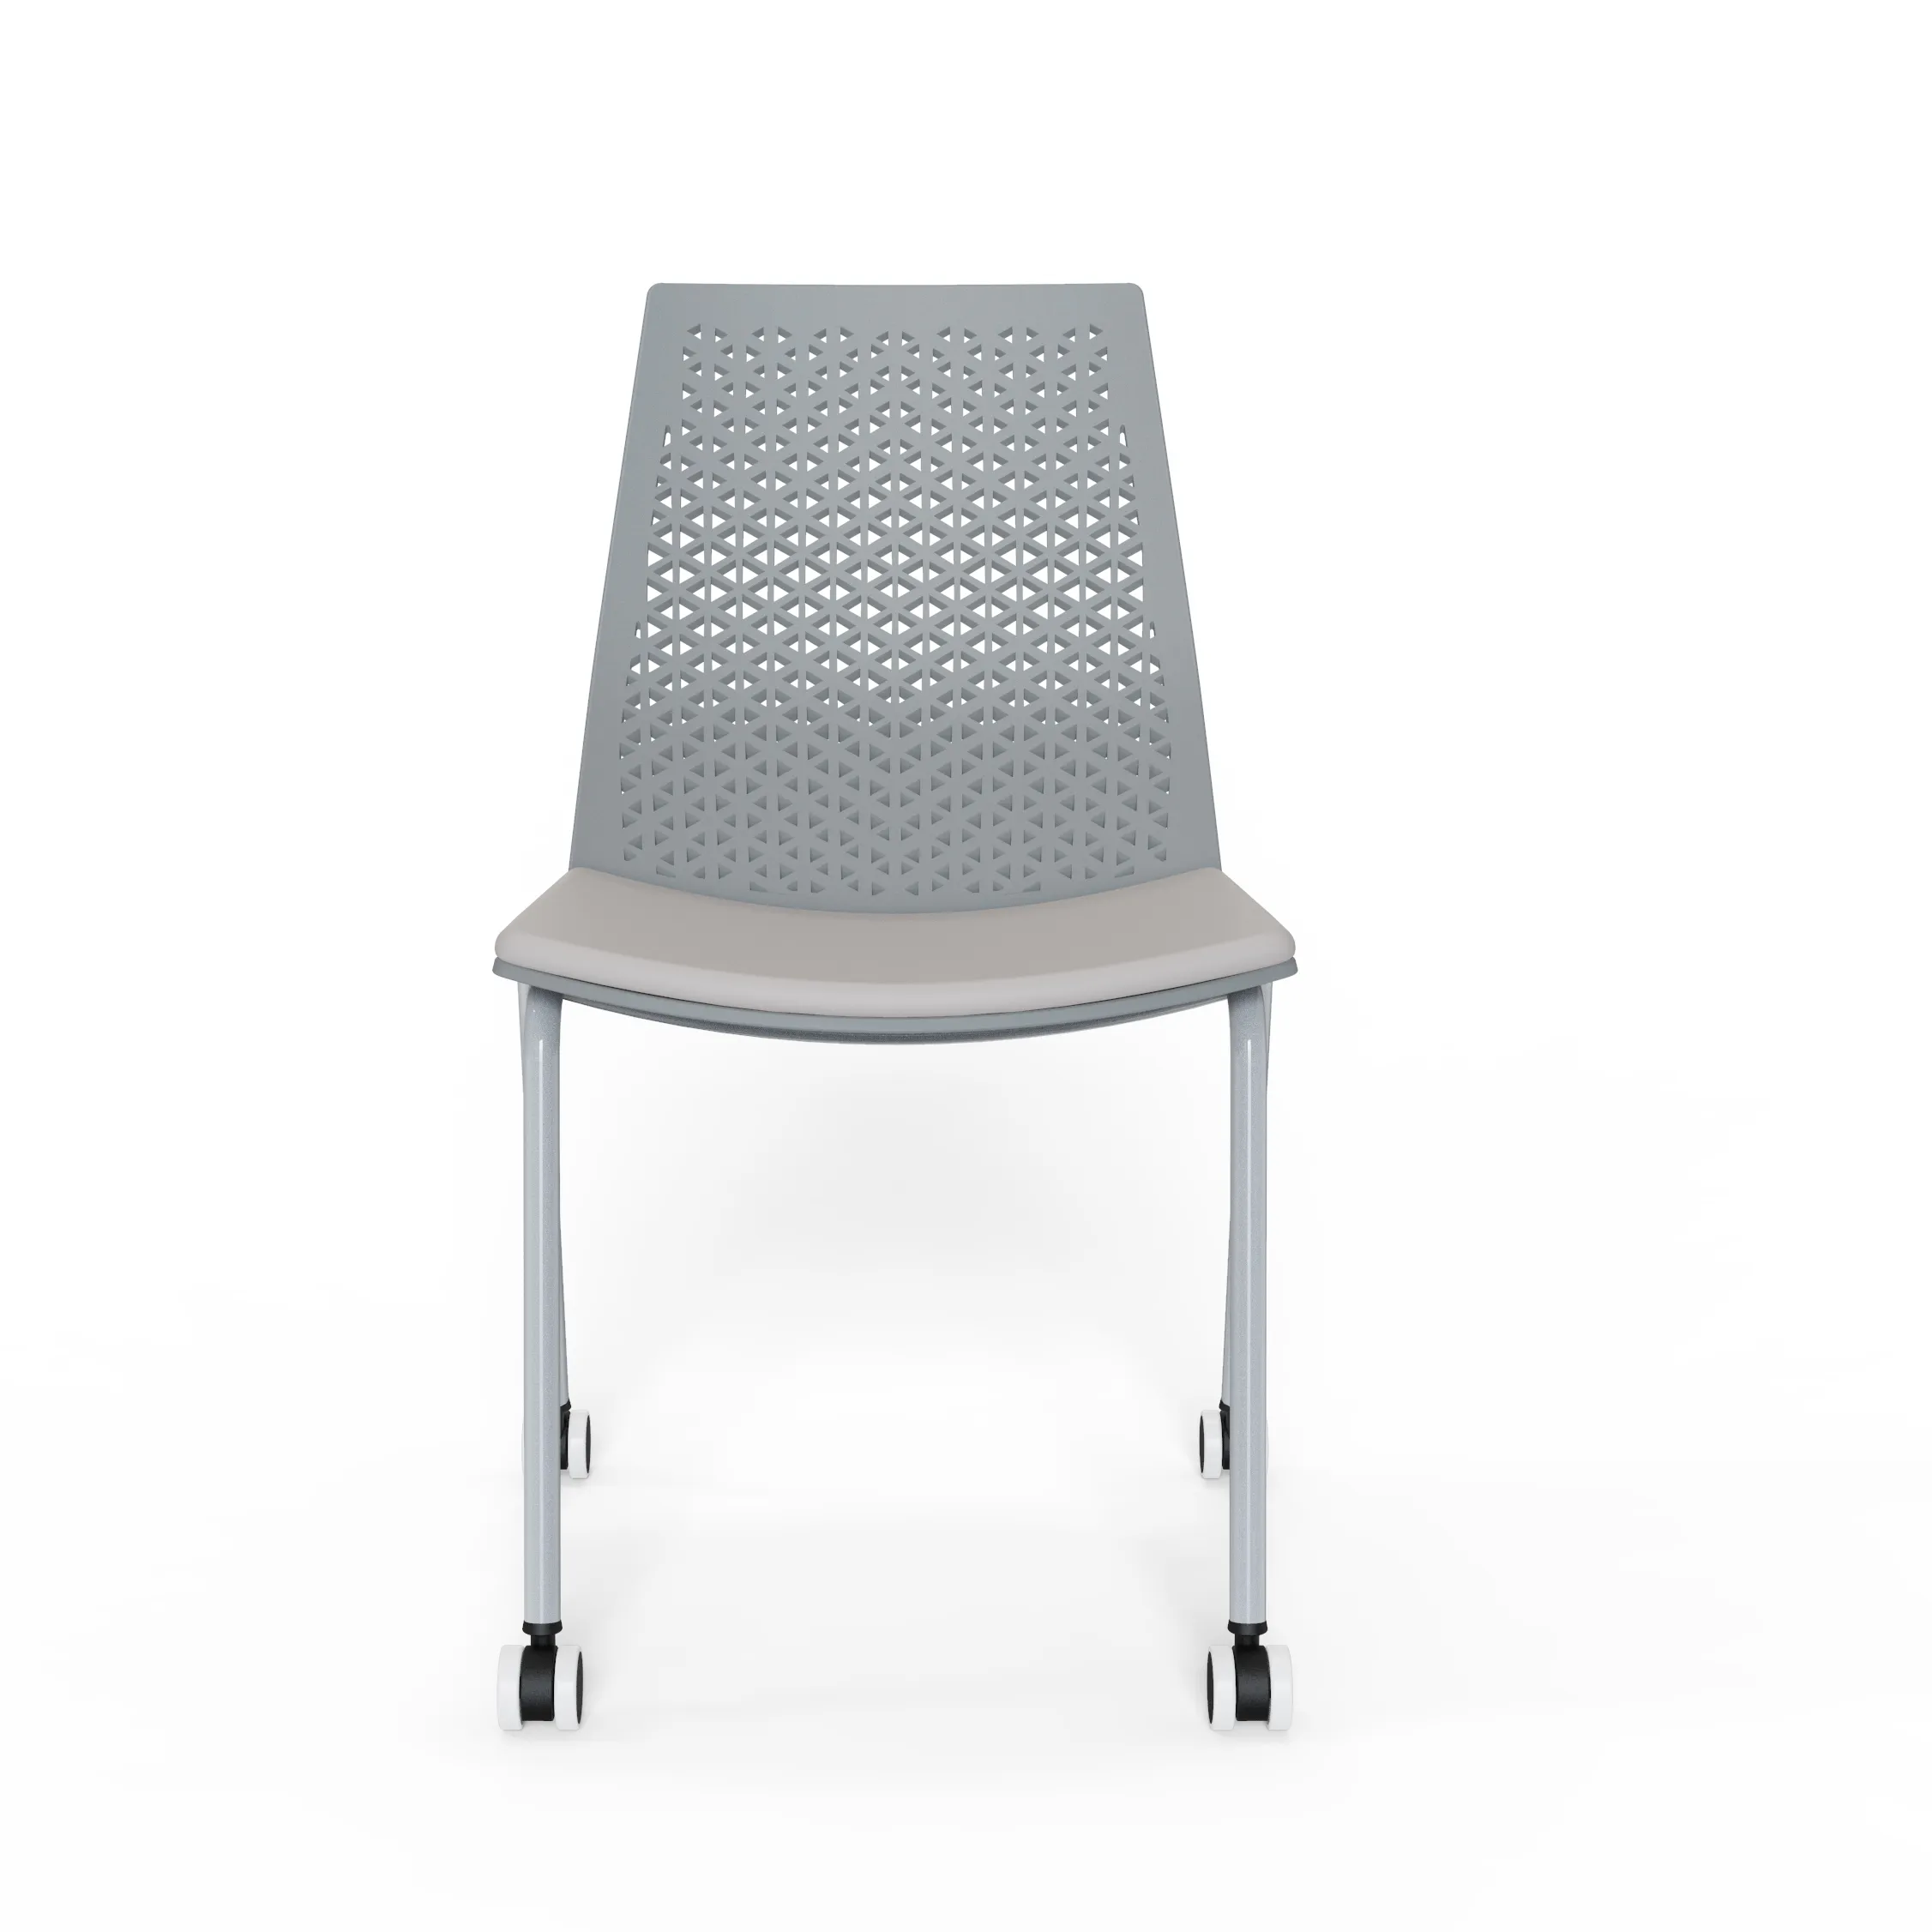 새로운 모델 학교 가구 도매 현대 PP 썰매 쌓을 수있는 플라스틱 의자 사무실 방문자 훈련 의자